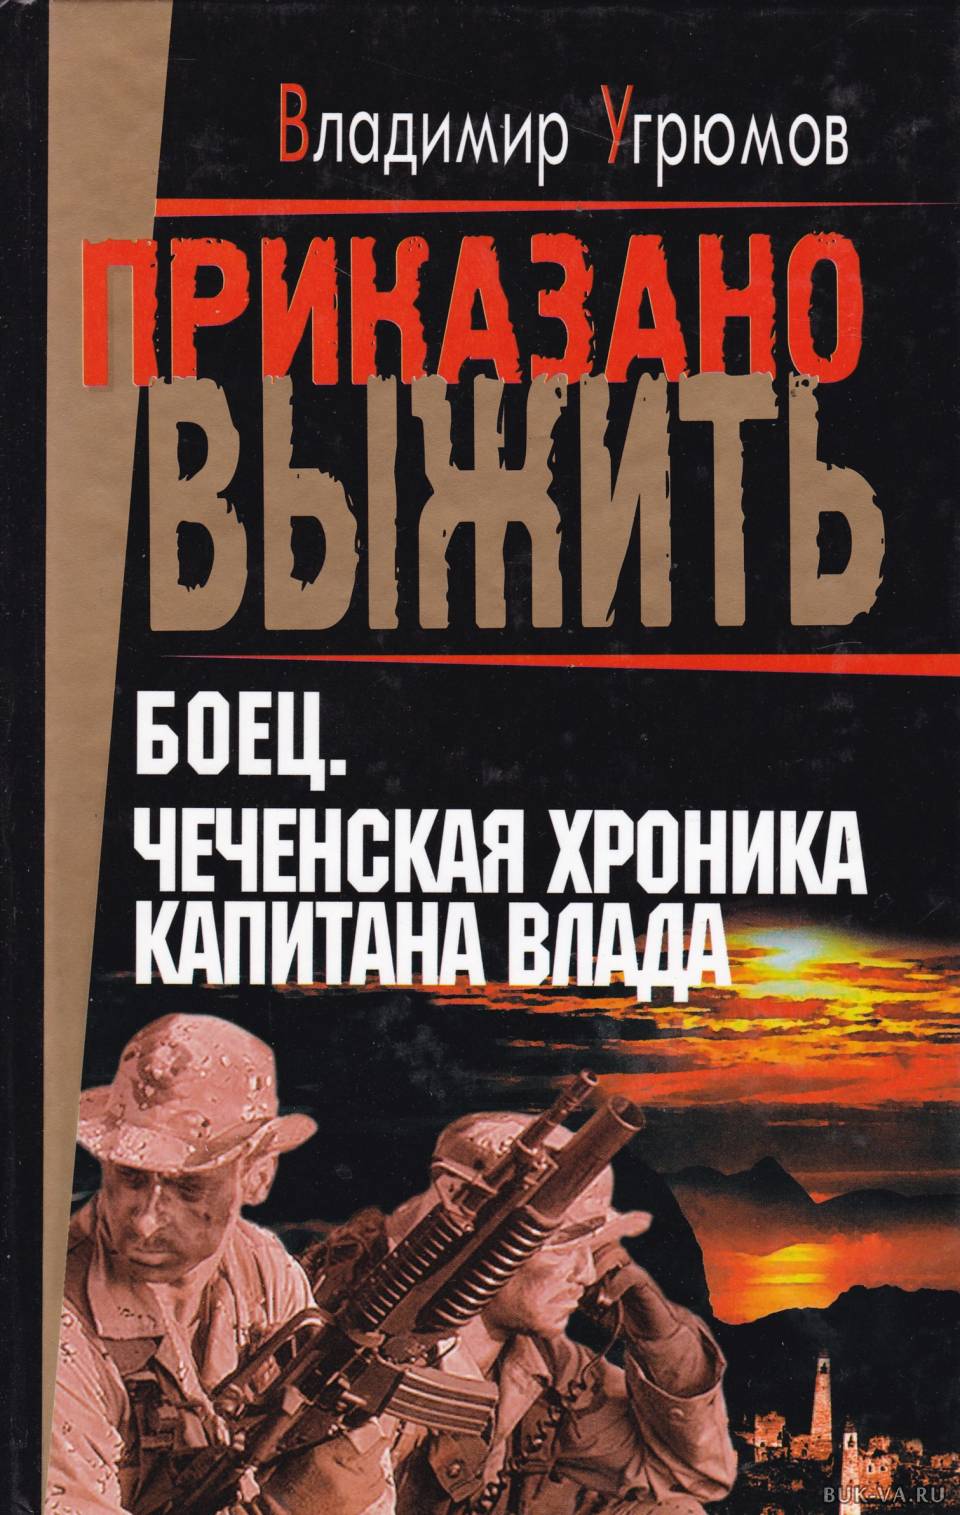 Приказано выжить аудиокнига. Книги о Чеченской войне. Книга про Чечню. Книга про бойца.